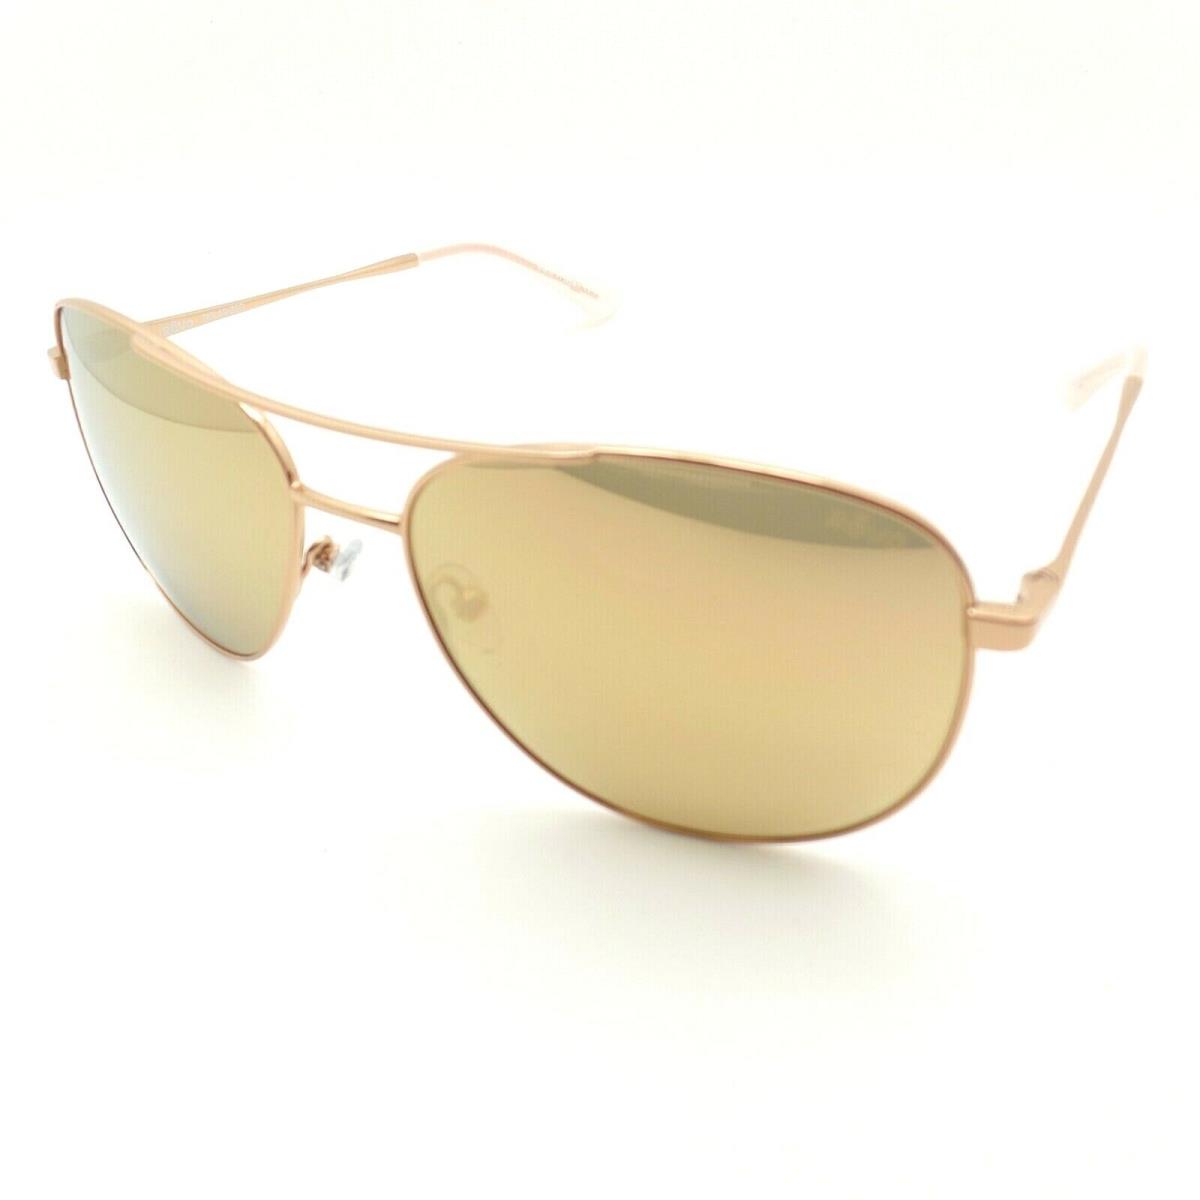 Revo sunglasses  - Rose Gold Frame, Champagne Lens